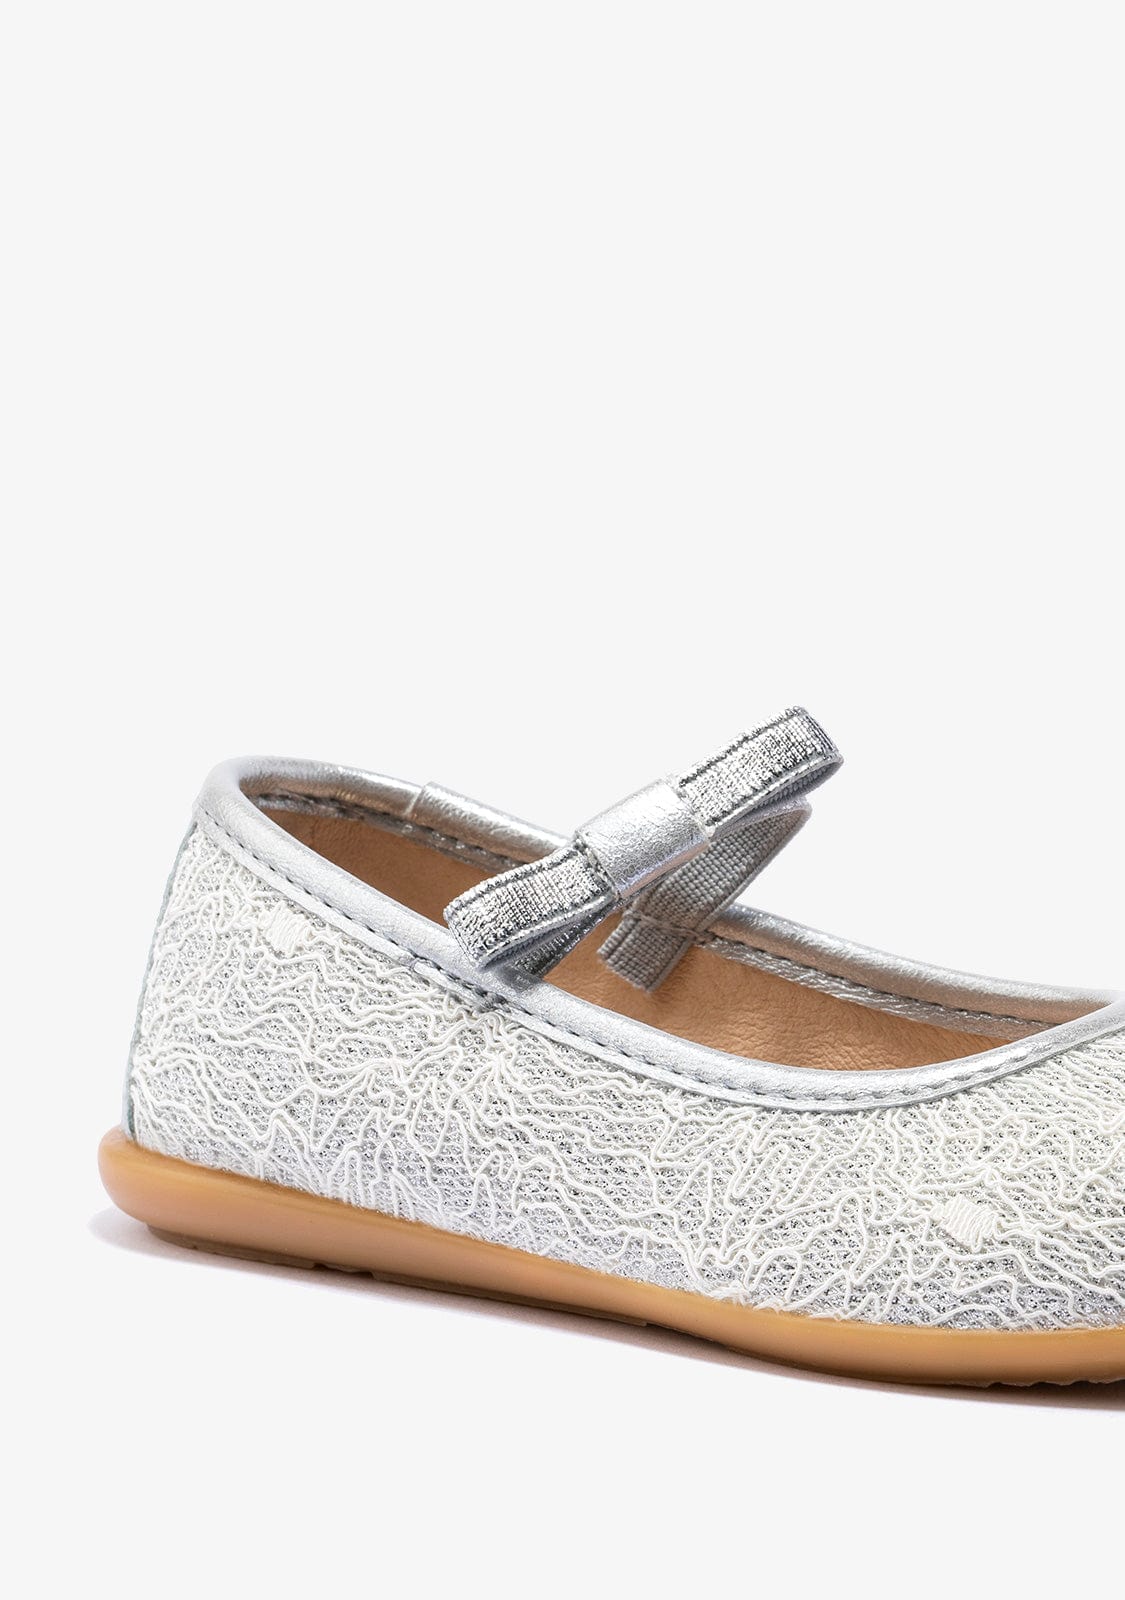 CONGUITOS Shoes Girl's Silver Ballerinas Metallized